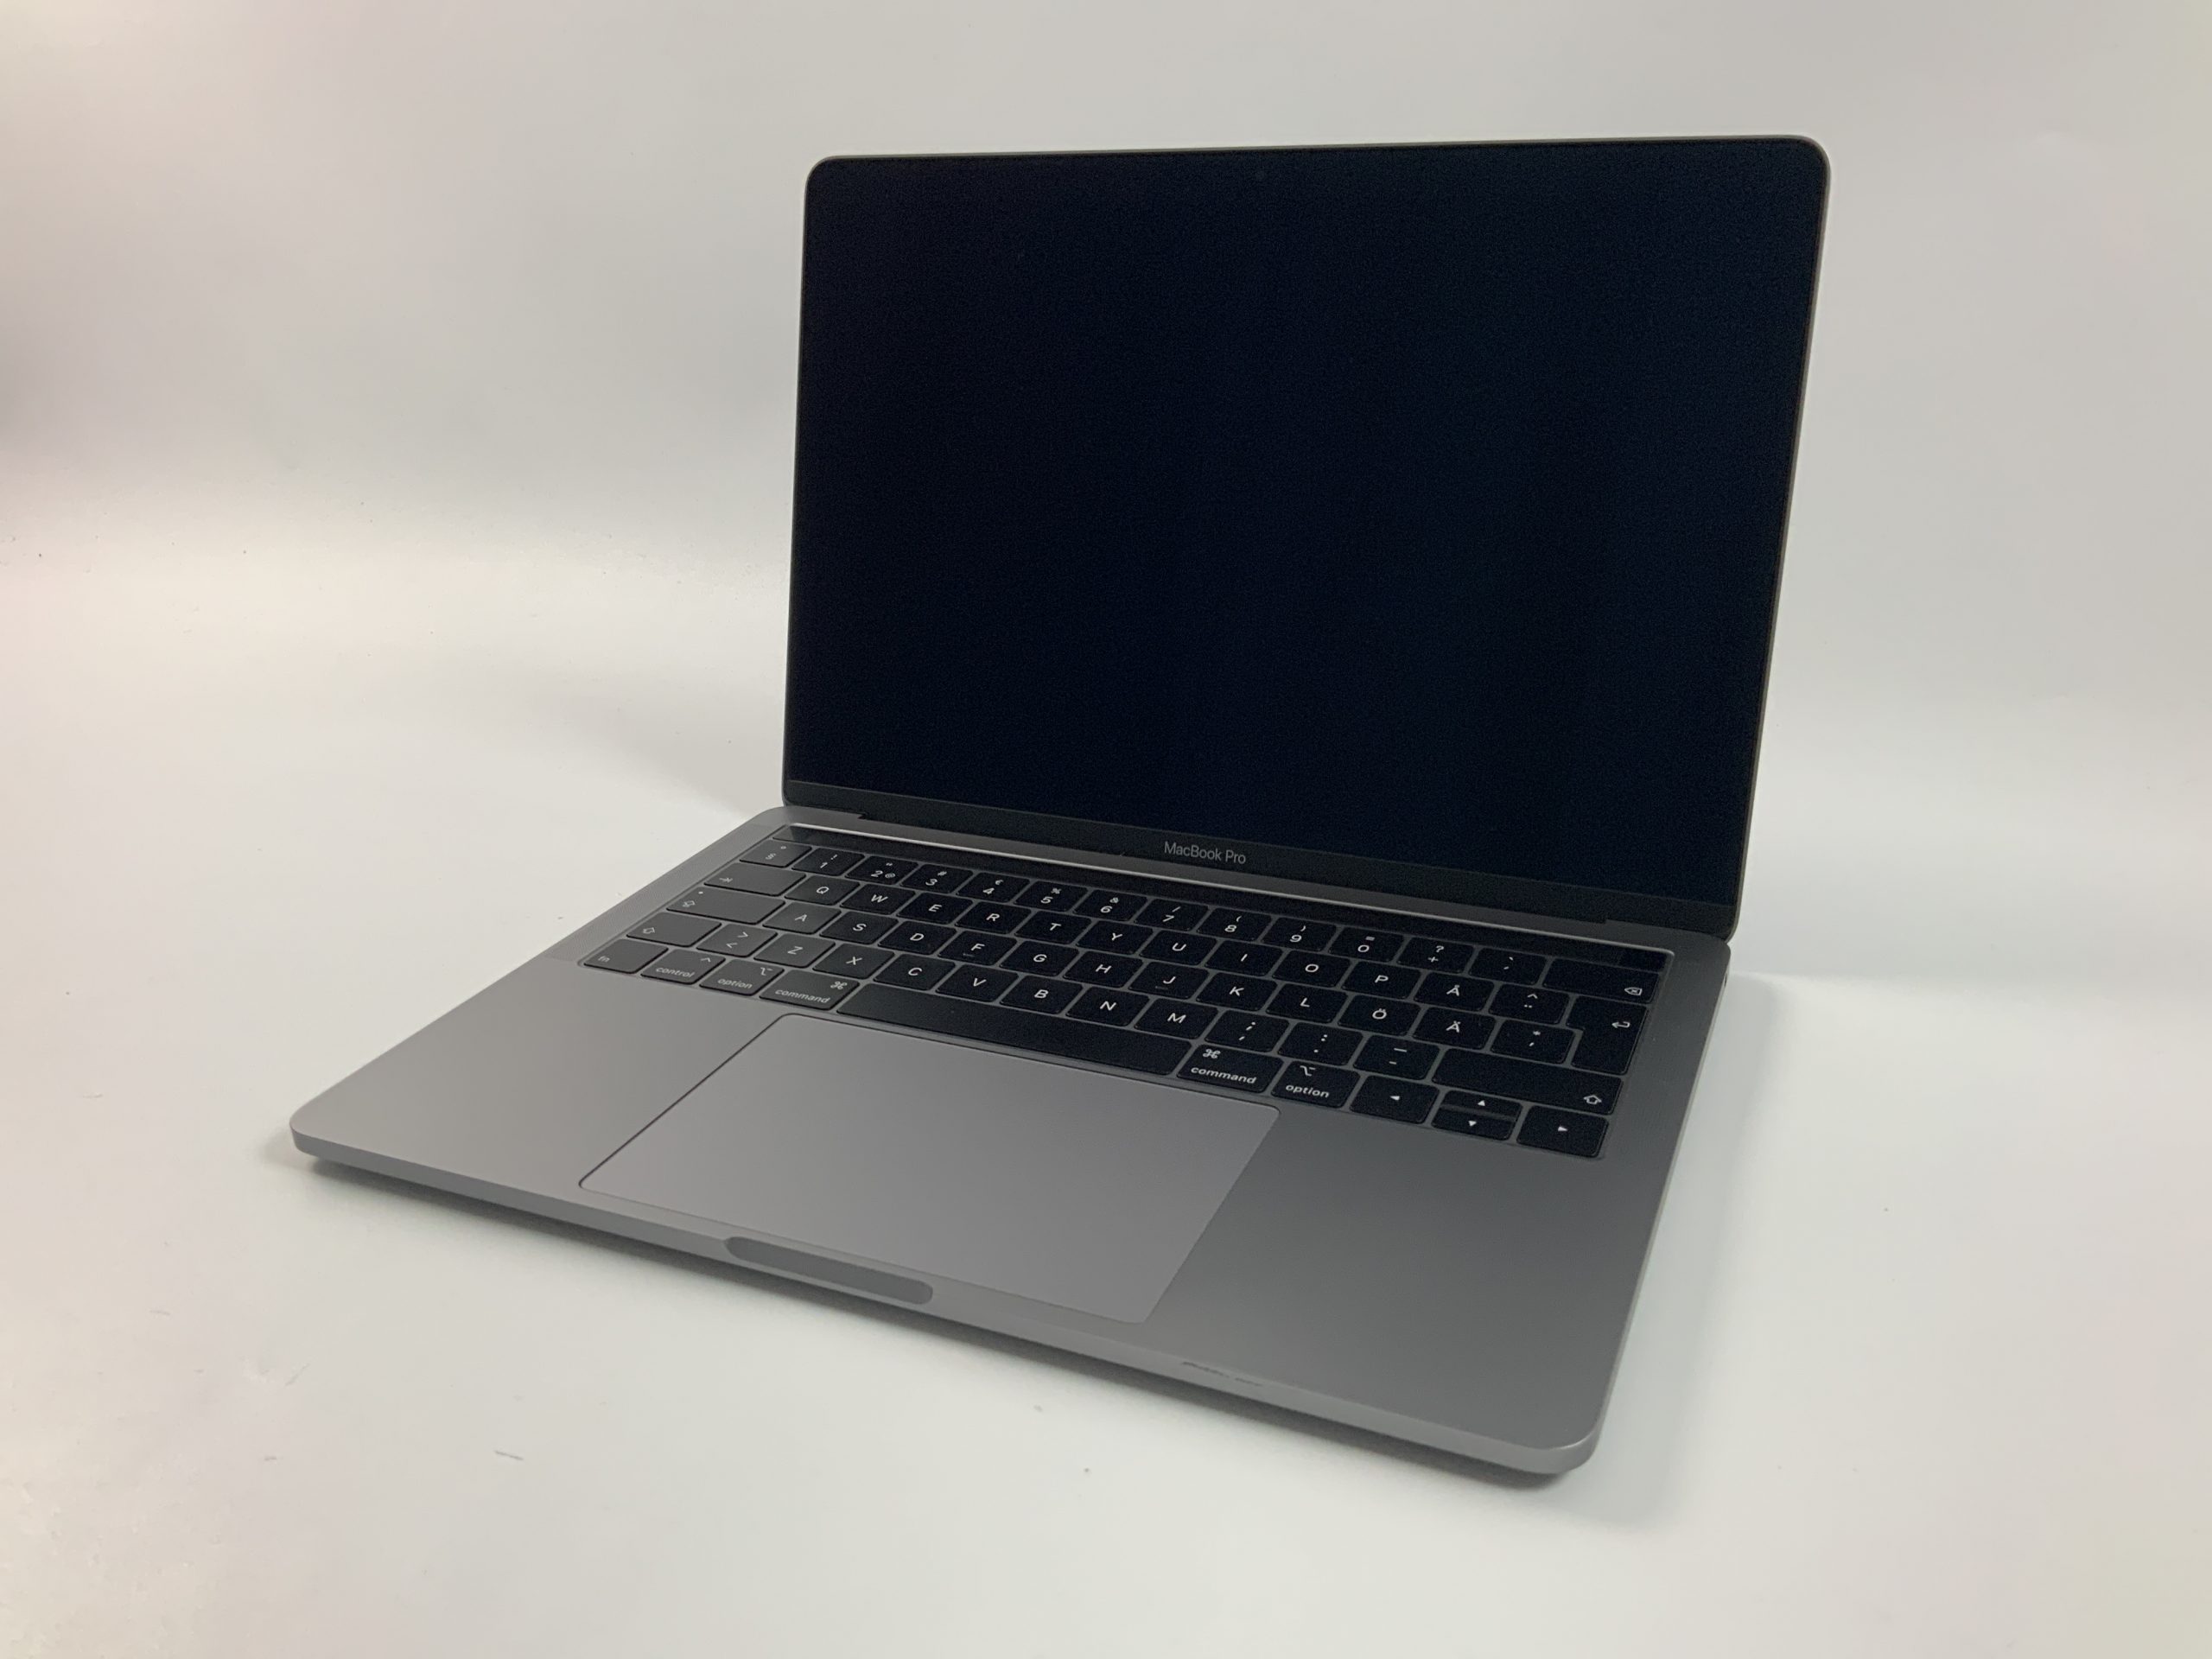 MacBook Pro 13" 2TBT Mid 2019 (Intel Quad-Core i5 1.4 GHz 8 GB RAM 128 GB SSD), Space Gray, Intel Quad-Core i5 1.4 GHz, 8 GB RAM, 128 GB SSD, Afbeelding 1